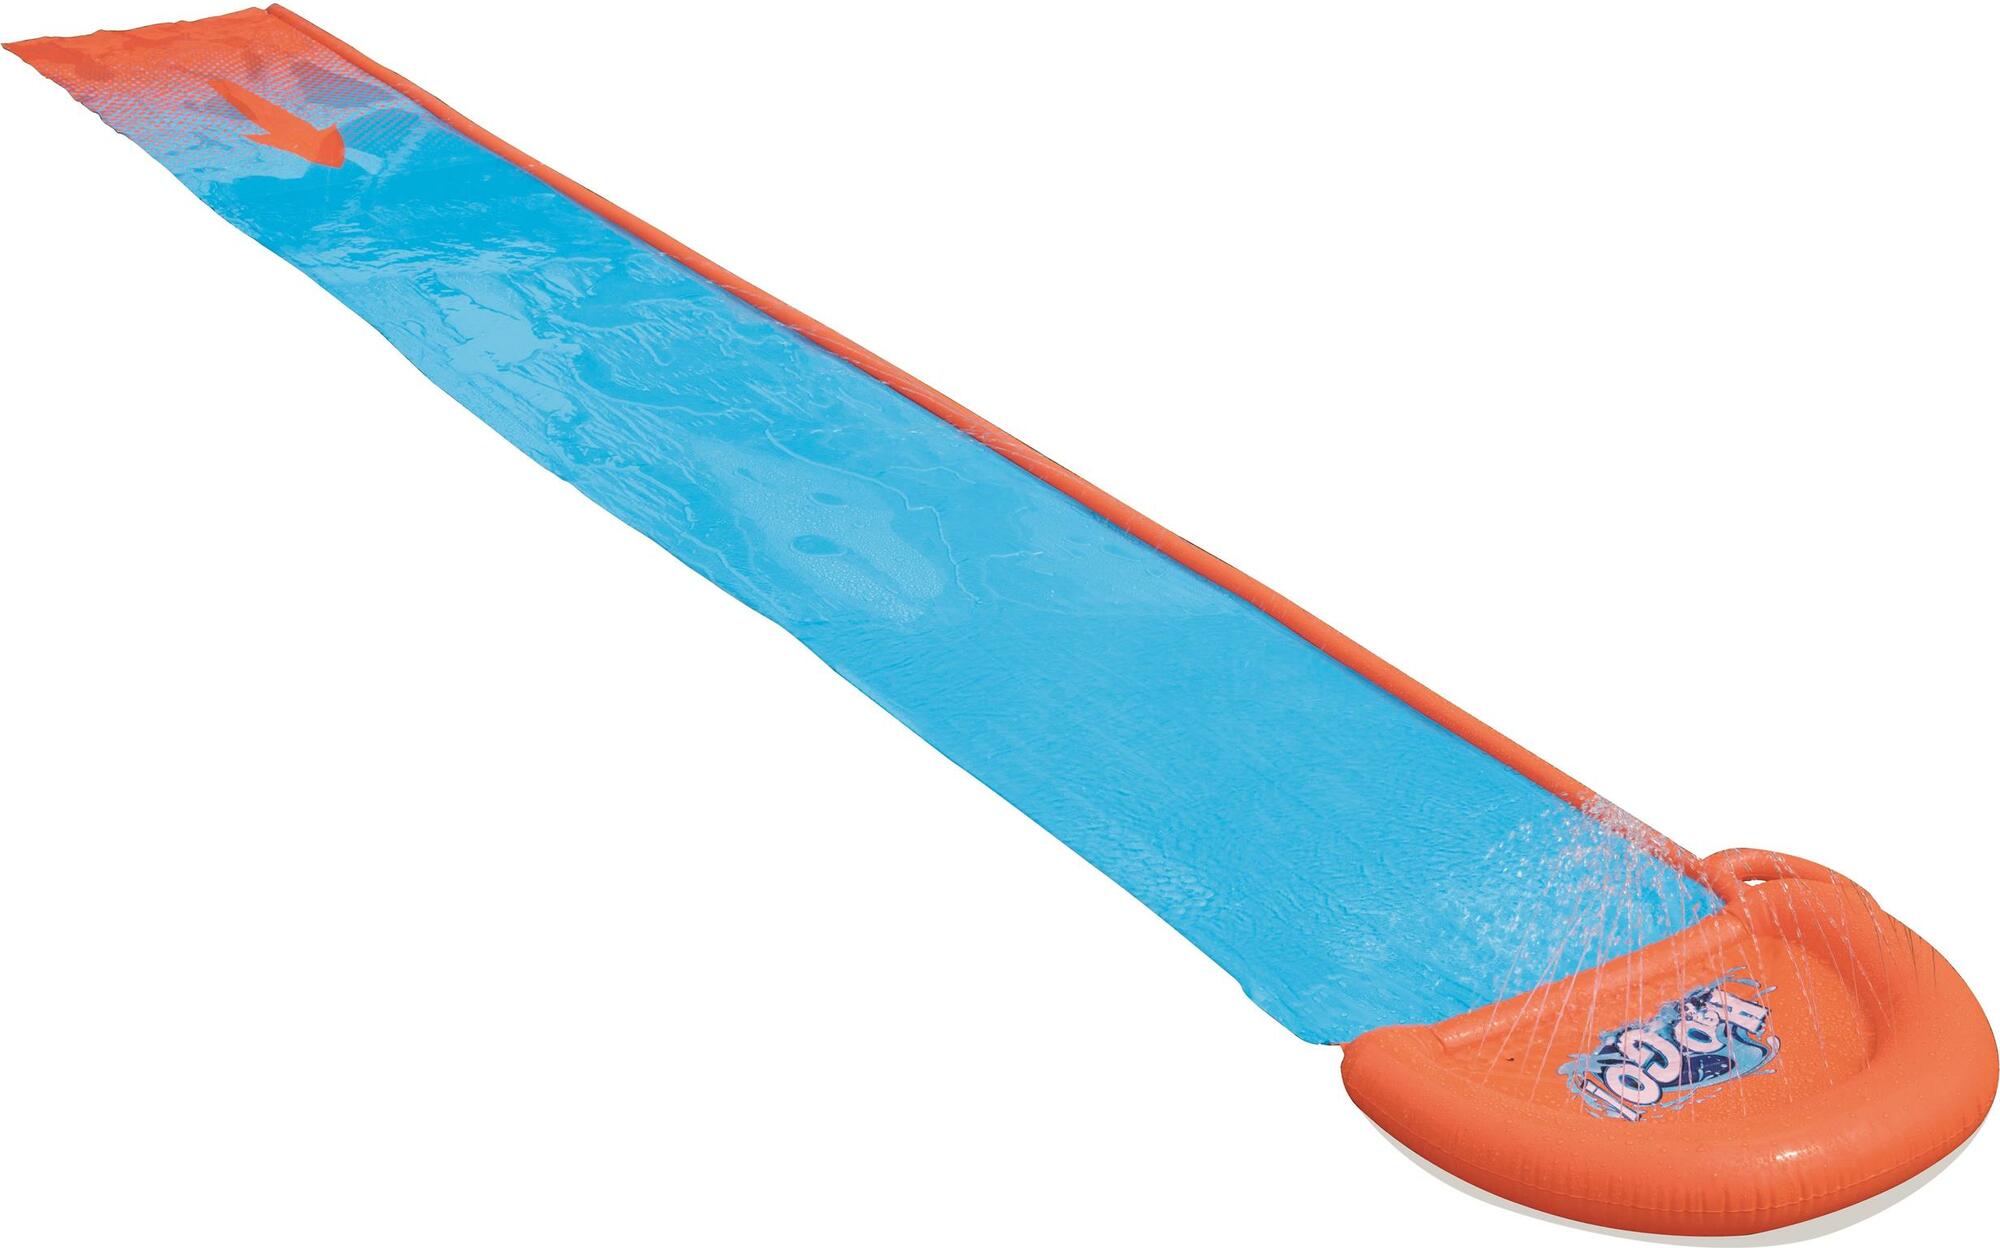 Vodní skluzavka Single Slide Bestway H2OGO! 4.88m